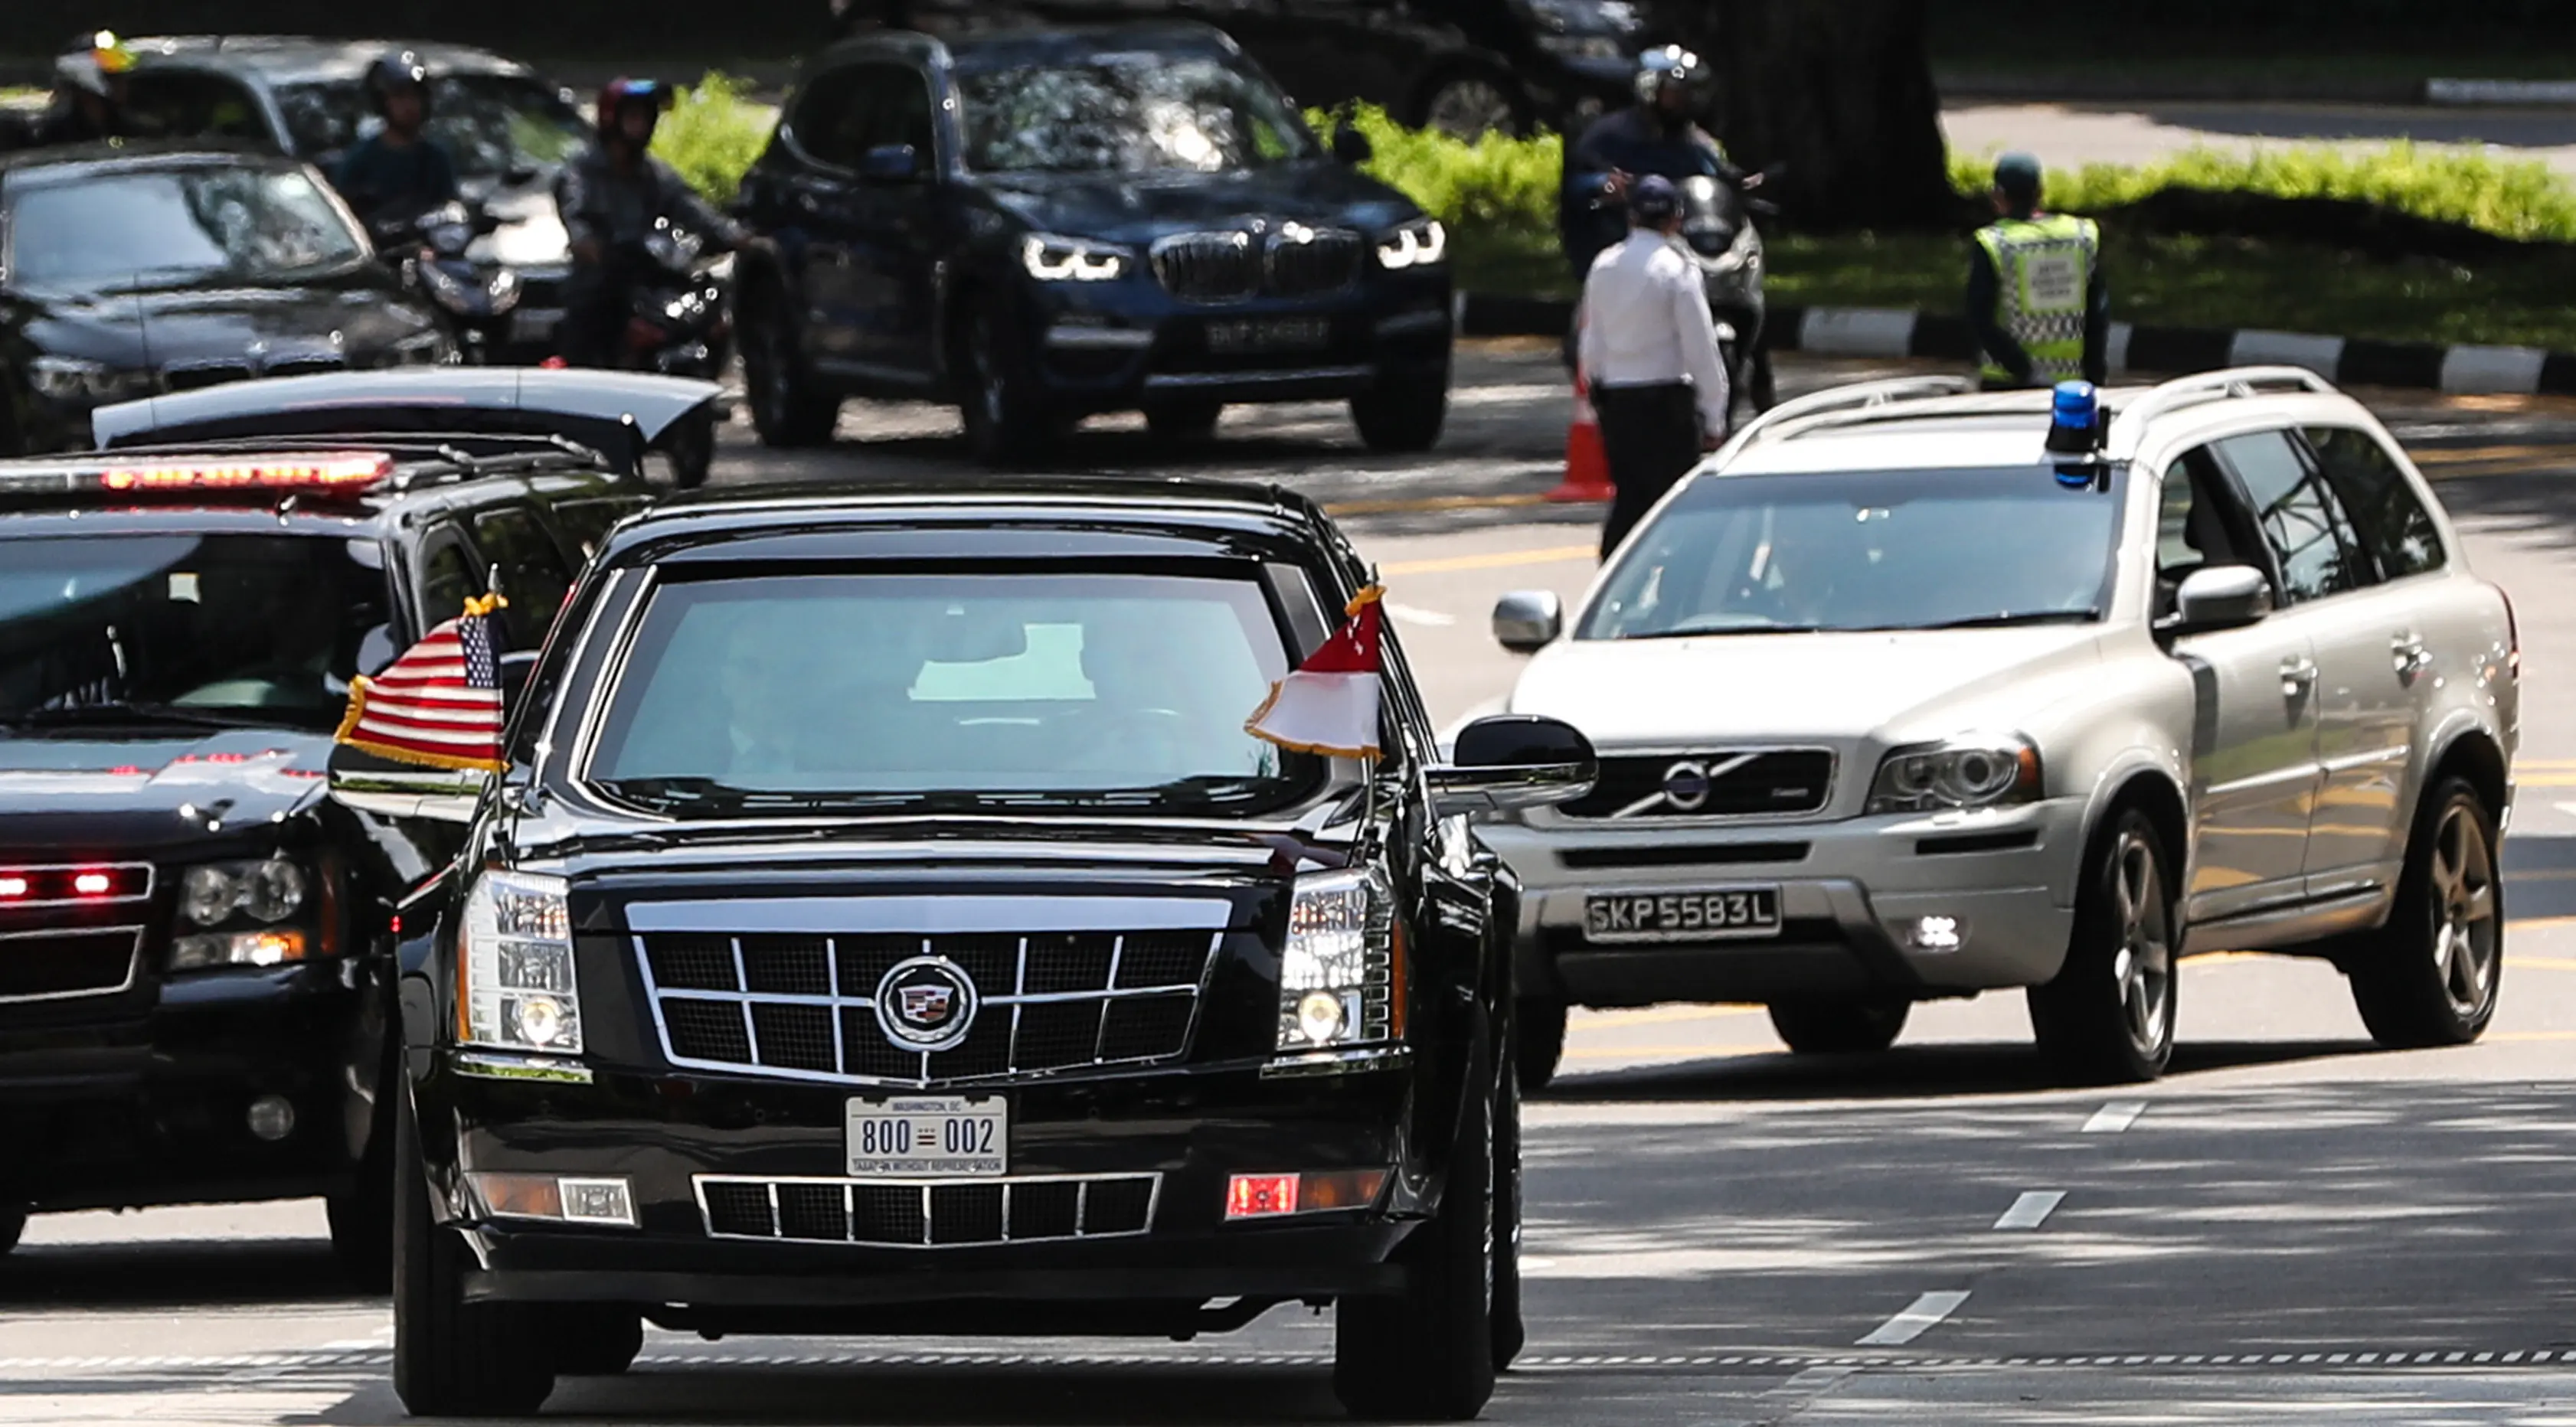 Iring-iringan mobil Presiden AS, Donald Trump memasuki kediaman resmi PM Lee Hsien Loong di Istana Singapura, Senin (11/6). Kedua tokoh tersebut akan membahas hubungan AS-Singapura yang disusul dengan makan siang bersama. (AP/Joseph Nair)